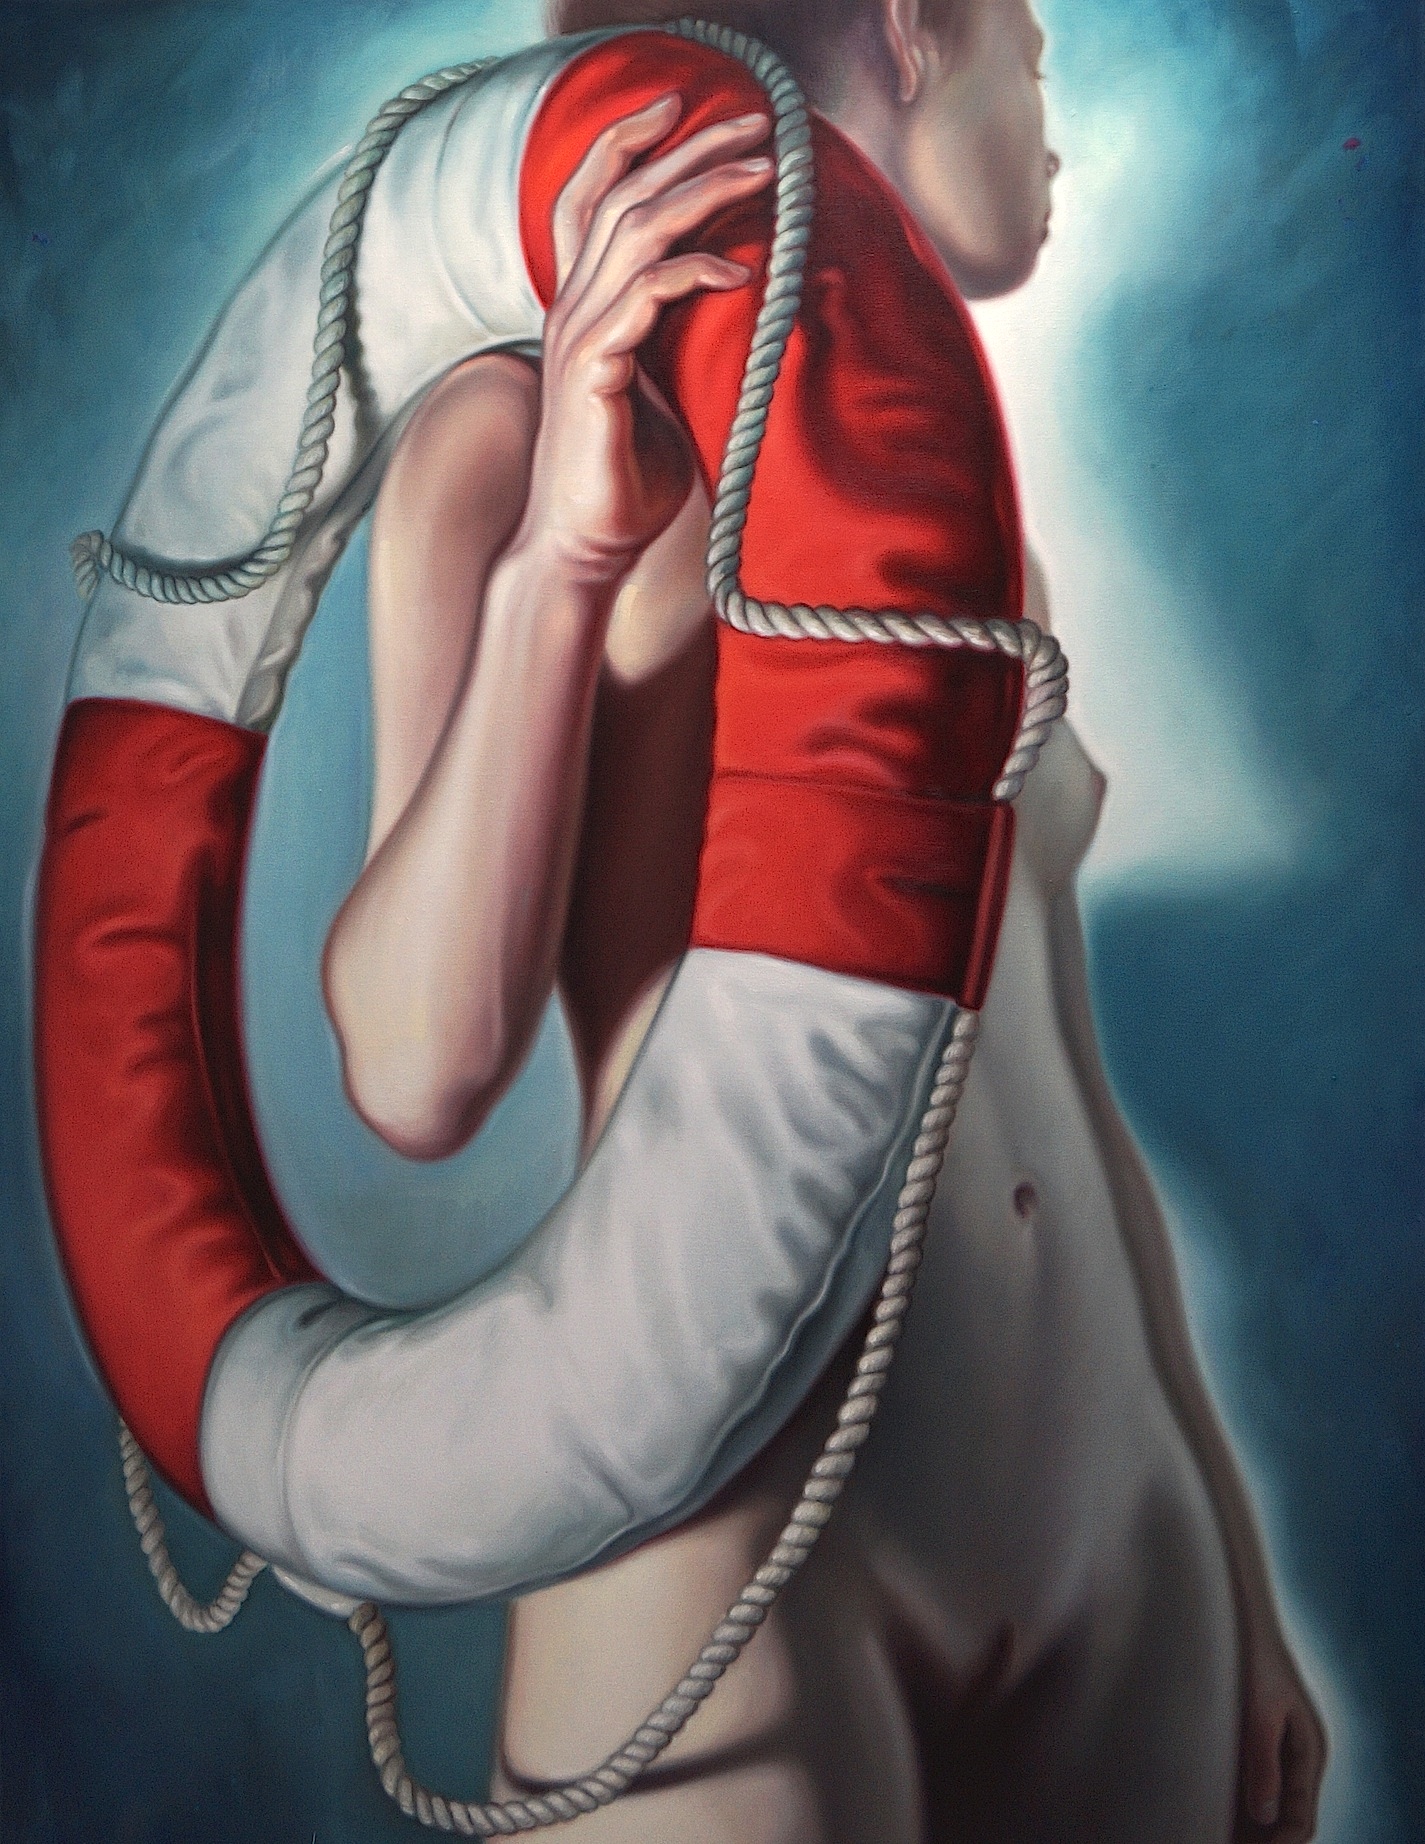 Frau mit Rettungsring, 190x140cm, Öl auf Leinwand, 2017